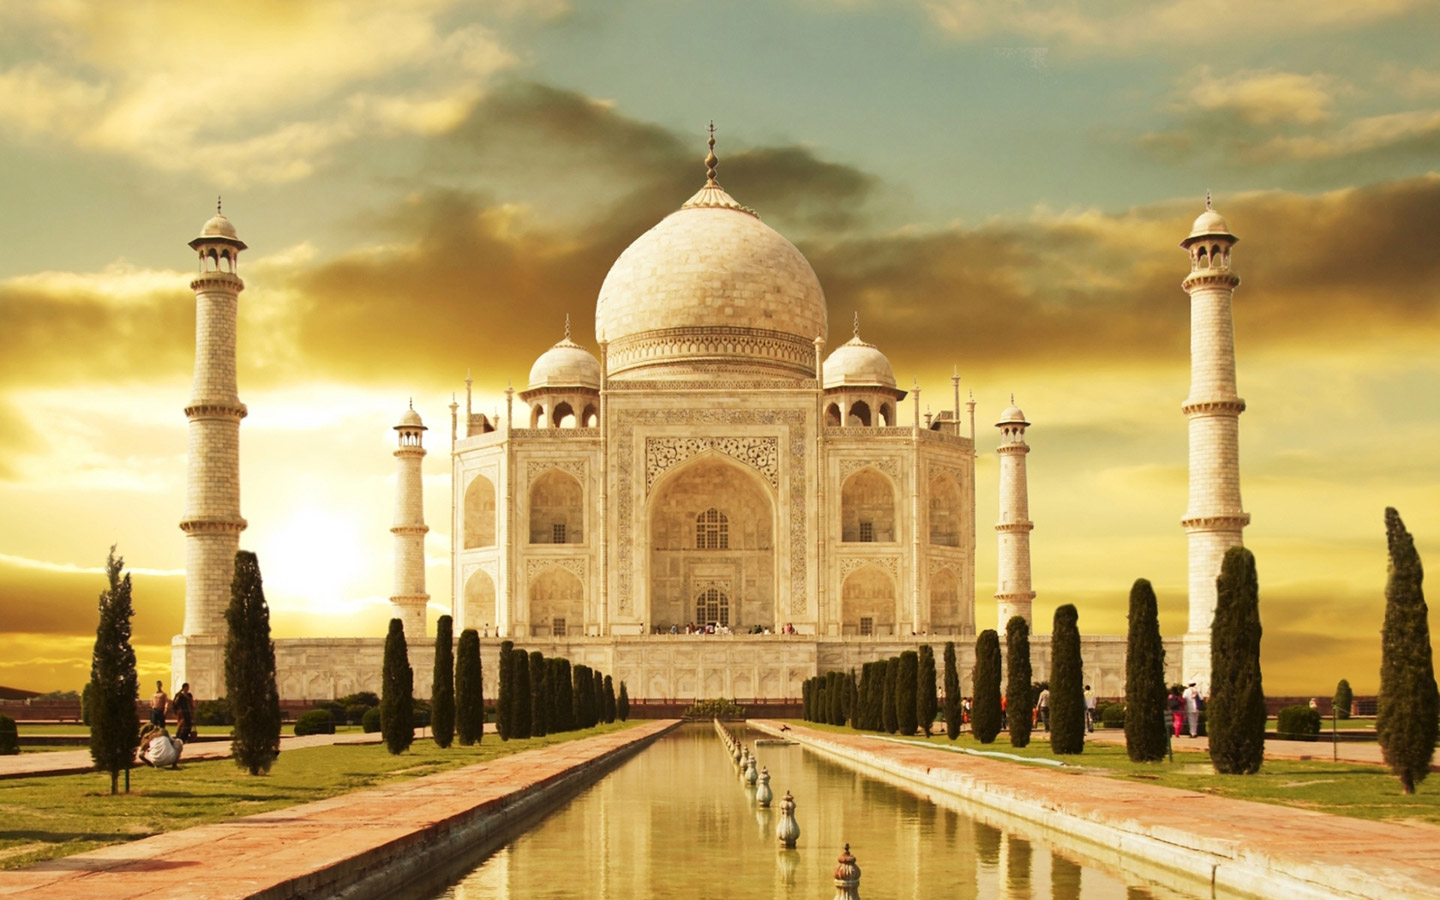 77+] Taj Mahal Background - WallpaperSafari